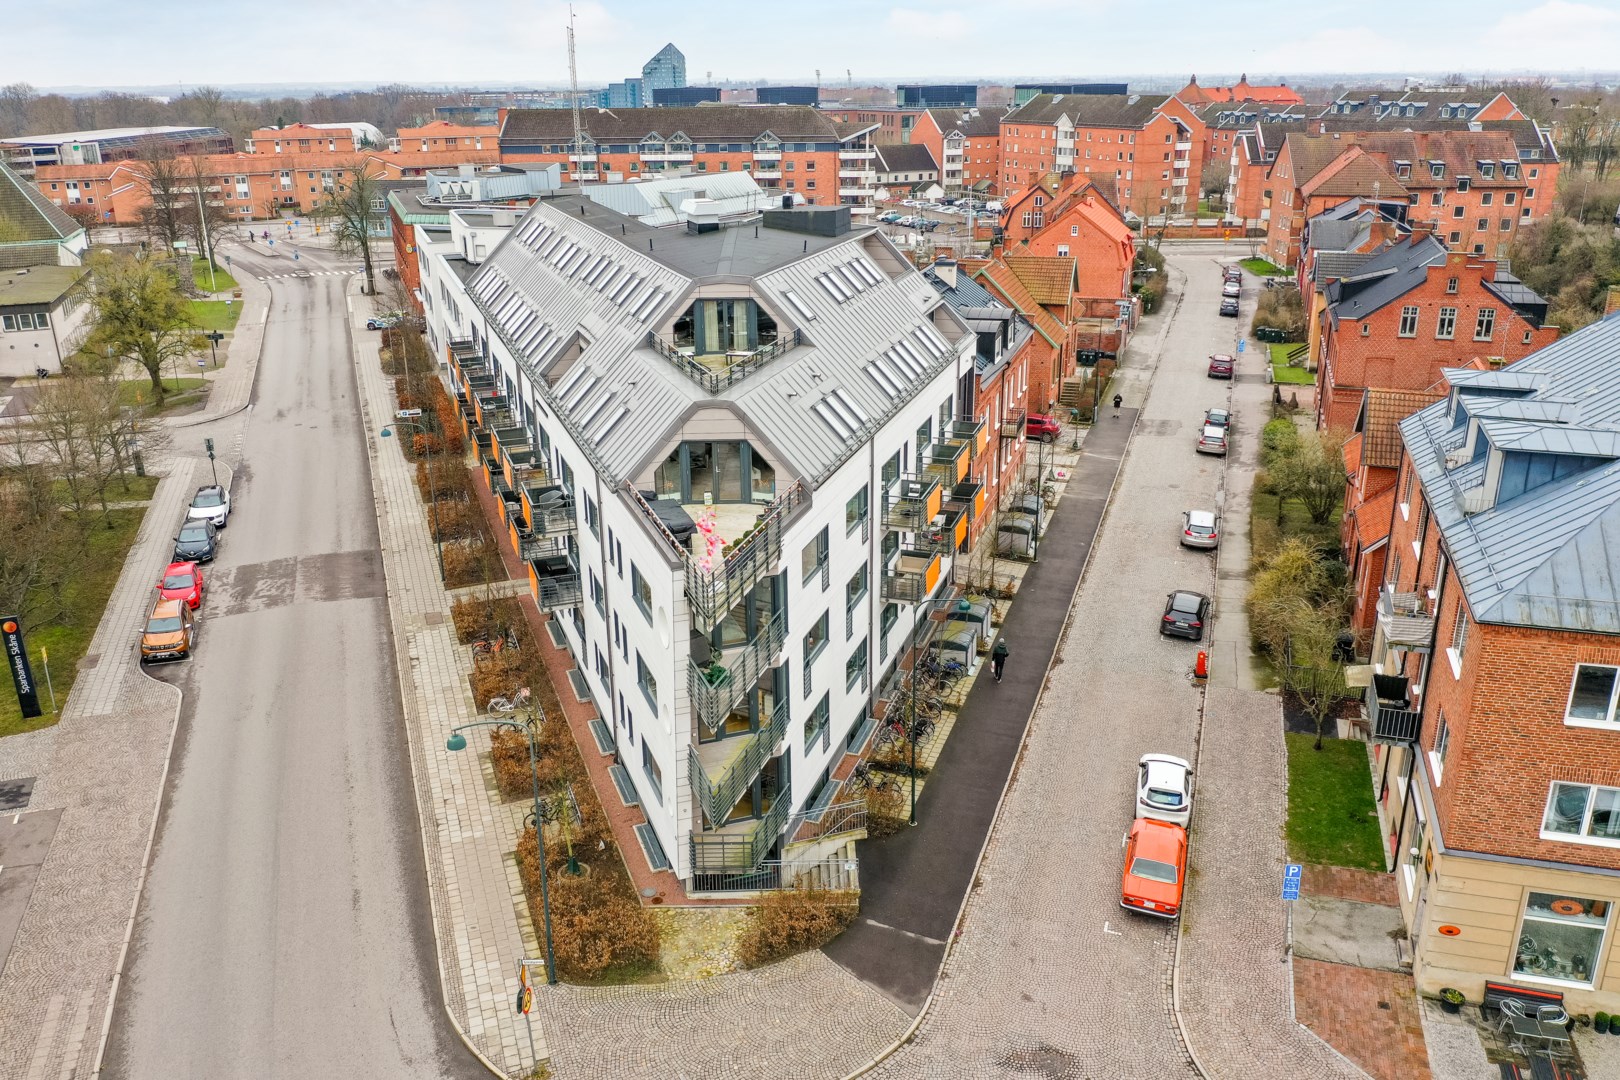 Bostadsrätt i Väster, Lund, Sverige, Slöjdgatan 12